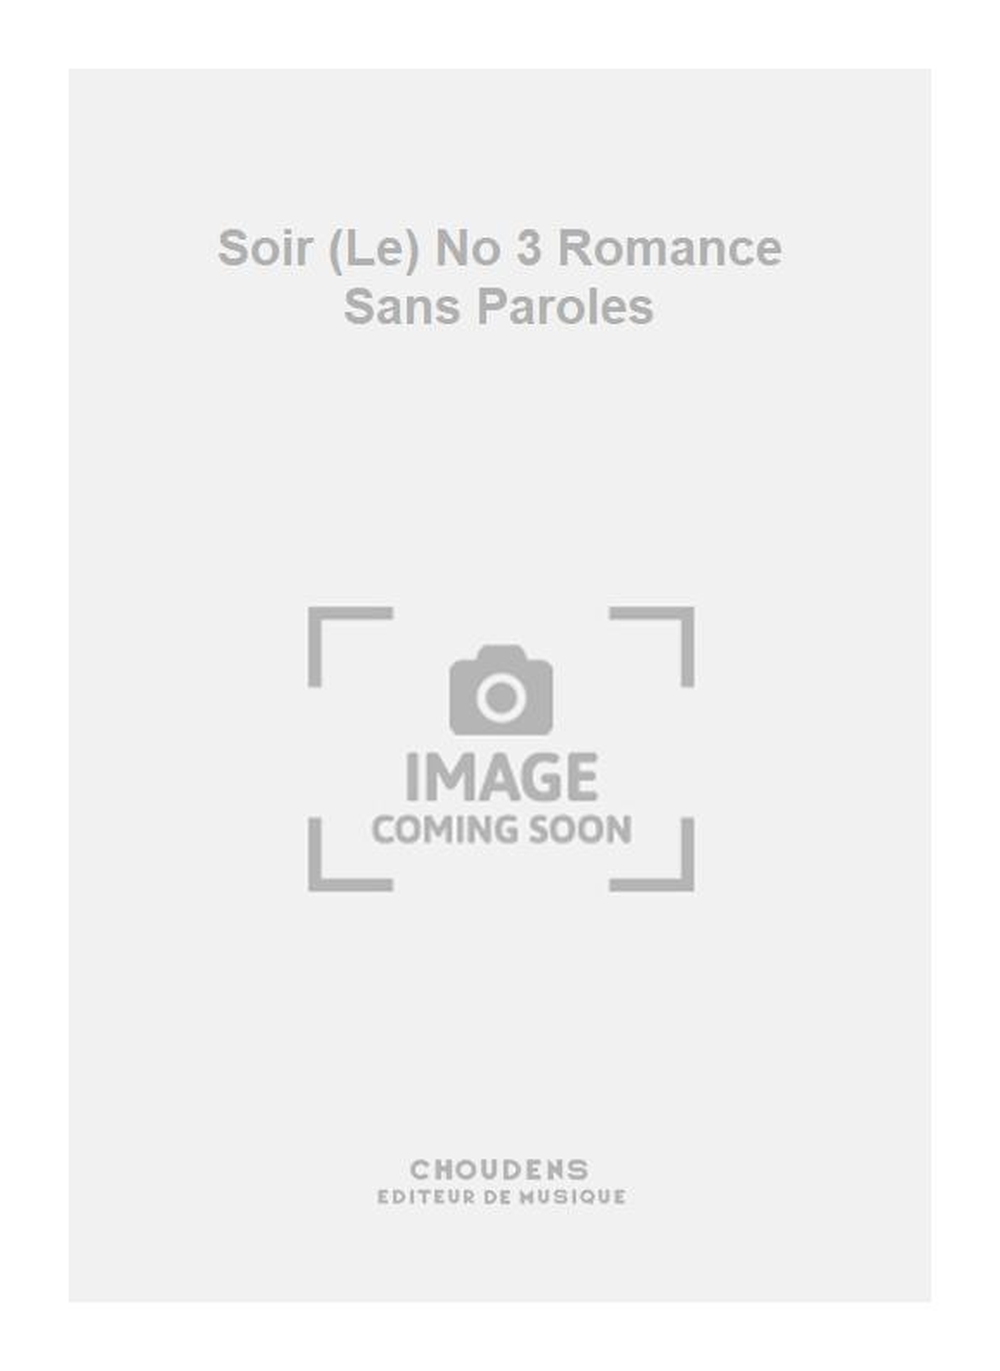 Charles Gounod: Soir (Le) No 3 Romance Sans Paroles